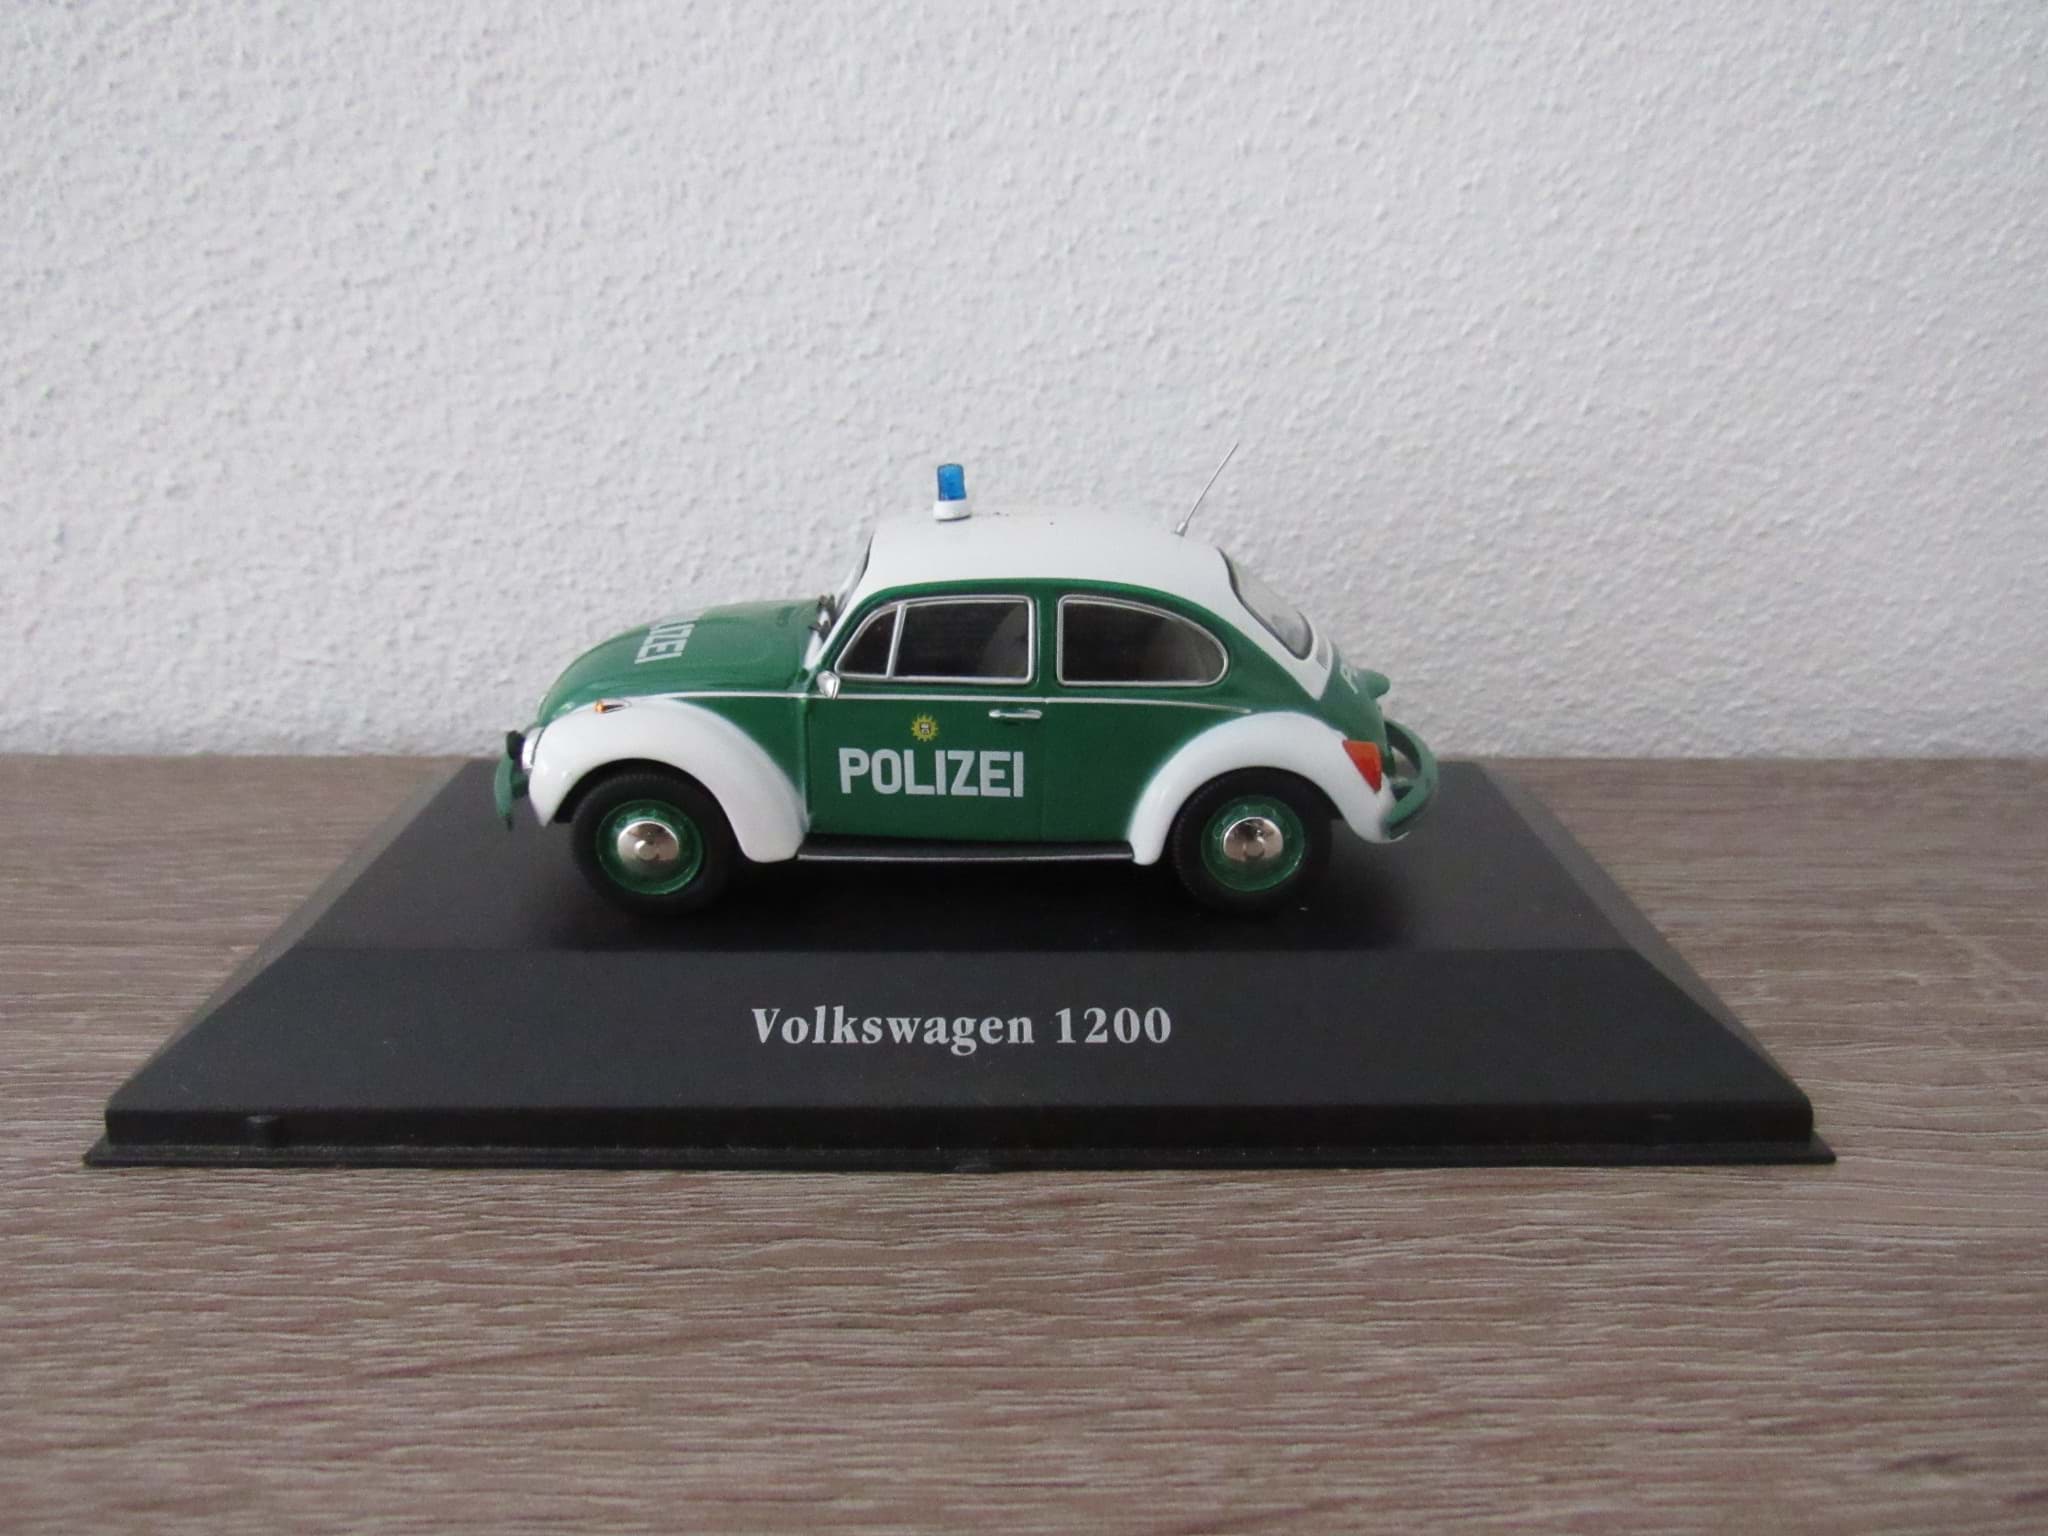 Afbeelding van Volkswagen 1200 VW Käfer Polizei Modell